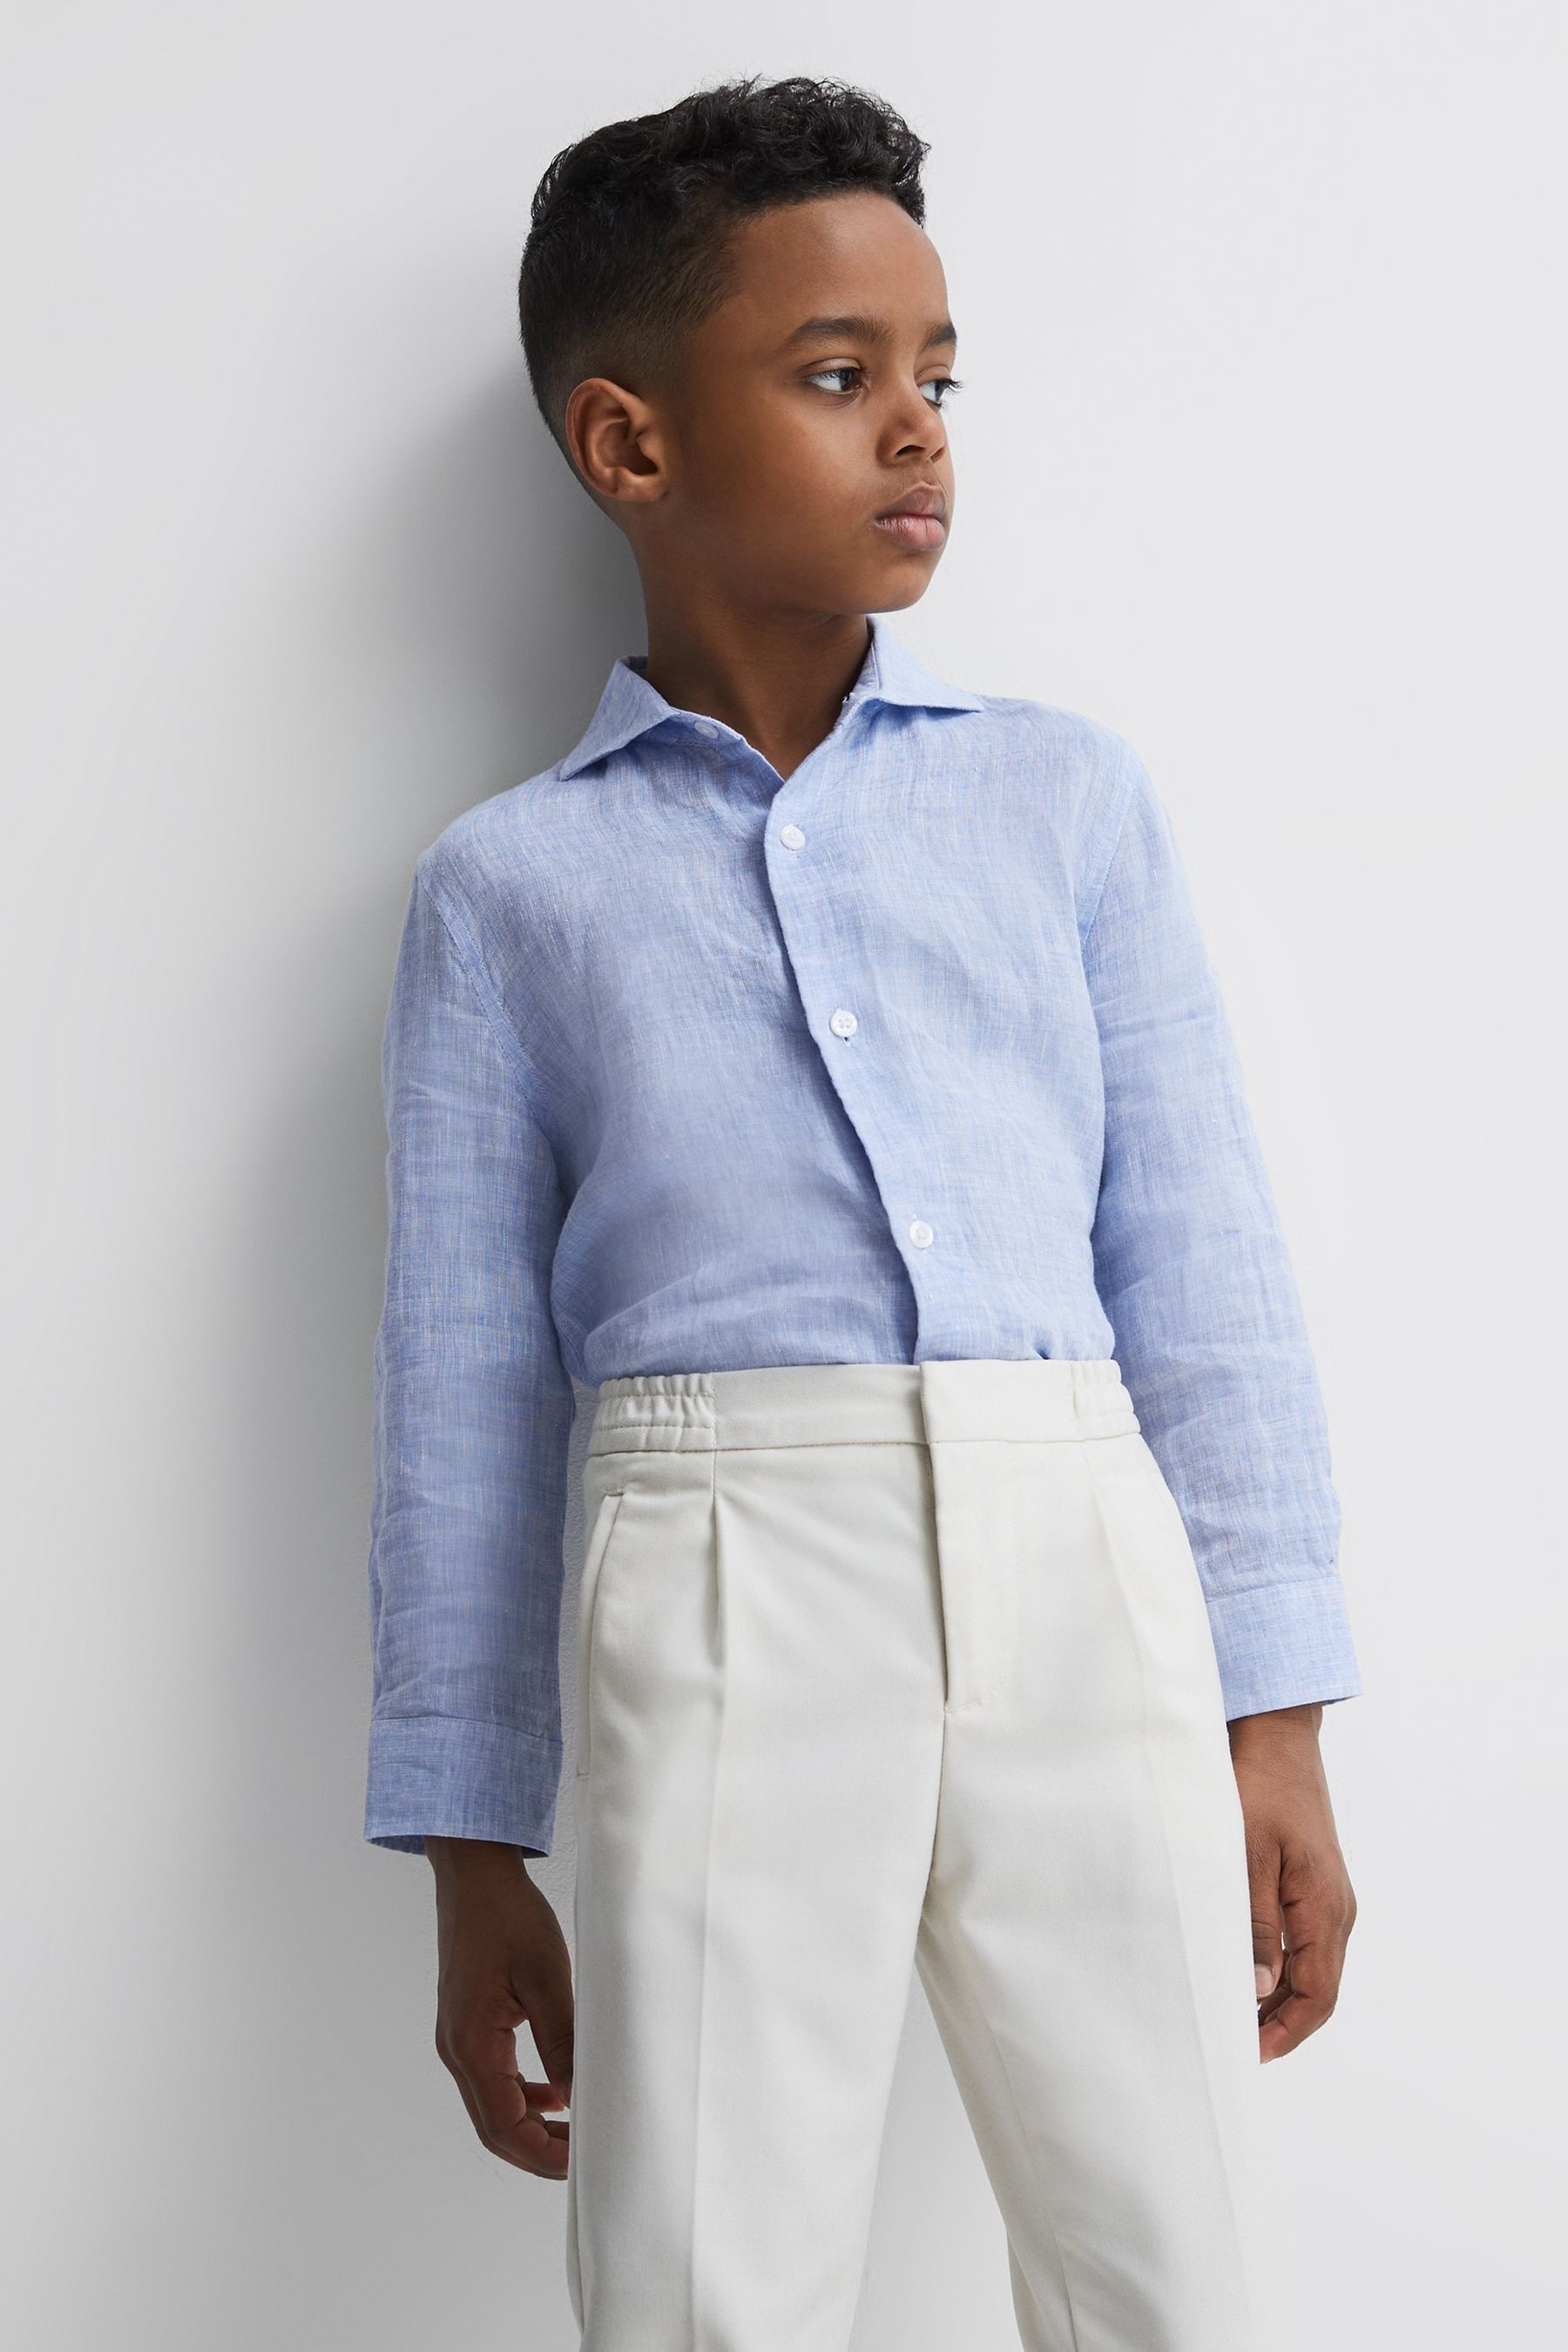 Reiss Ruban - Soft Blue Junior Linen Regular Fit Shirt, Age 4-5 Years